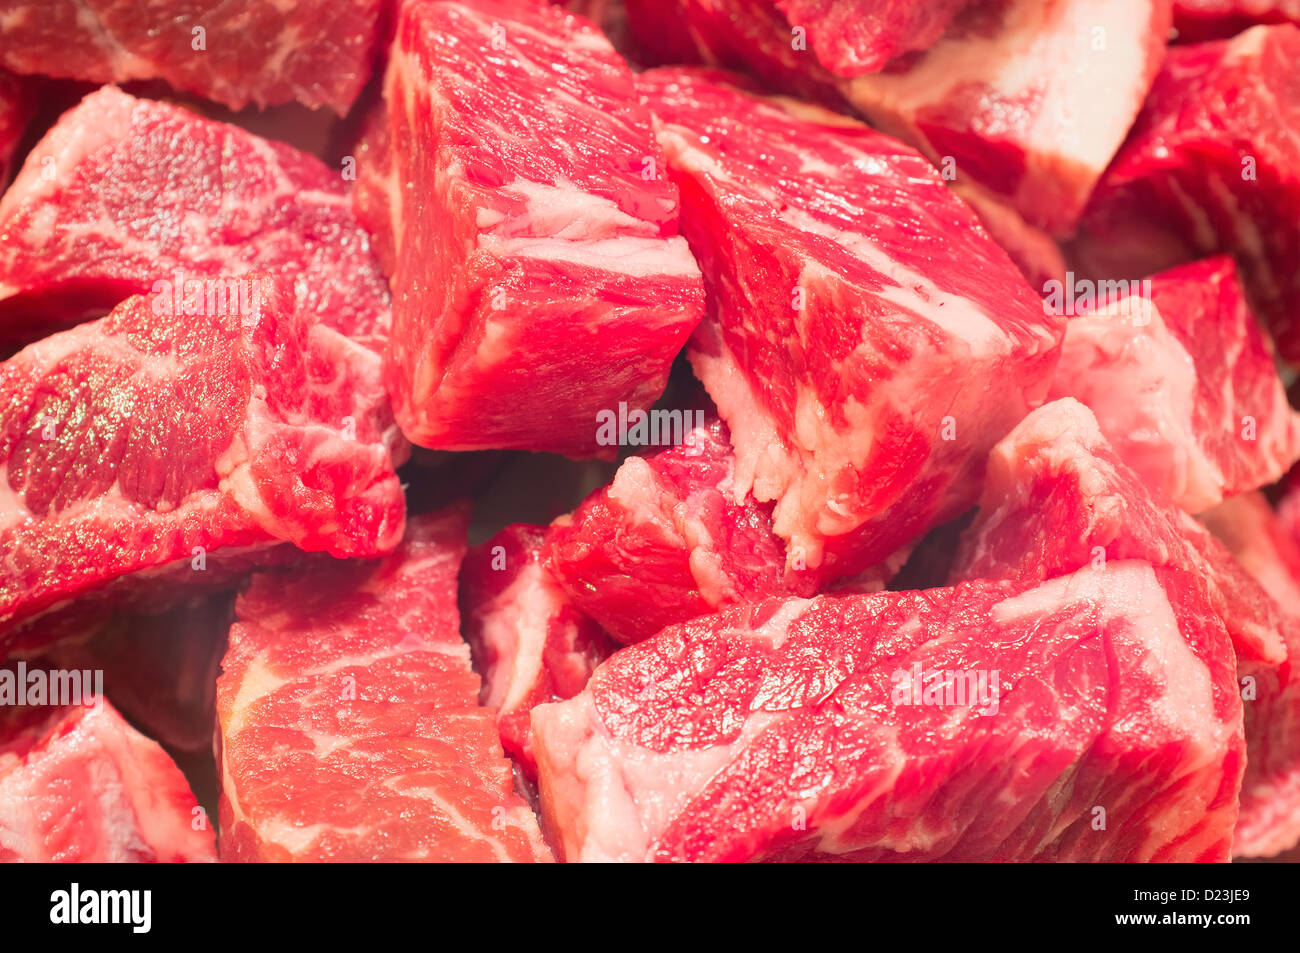 Rohes Fleisch ganz nah, Rindfleisch in Würfel schneiden, zum Kochen vorbereitet Stockfoto